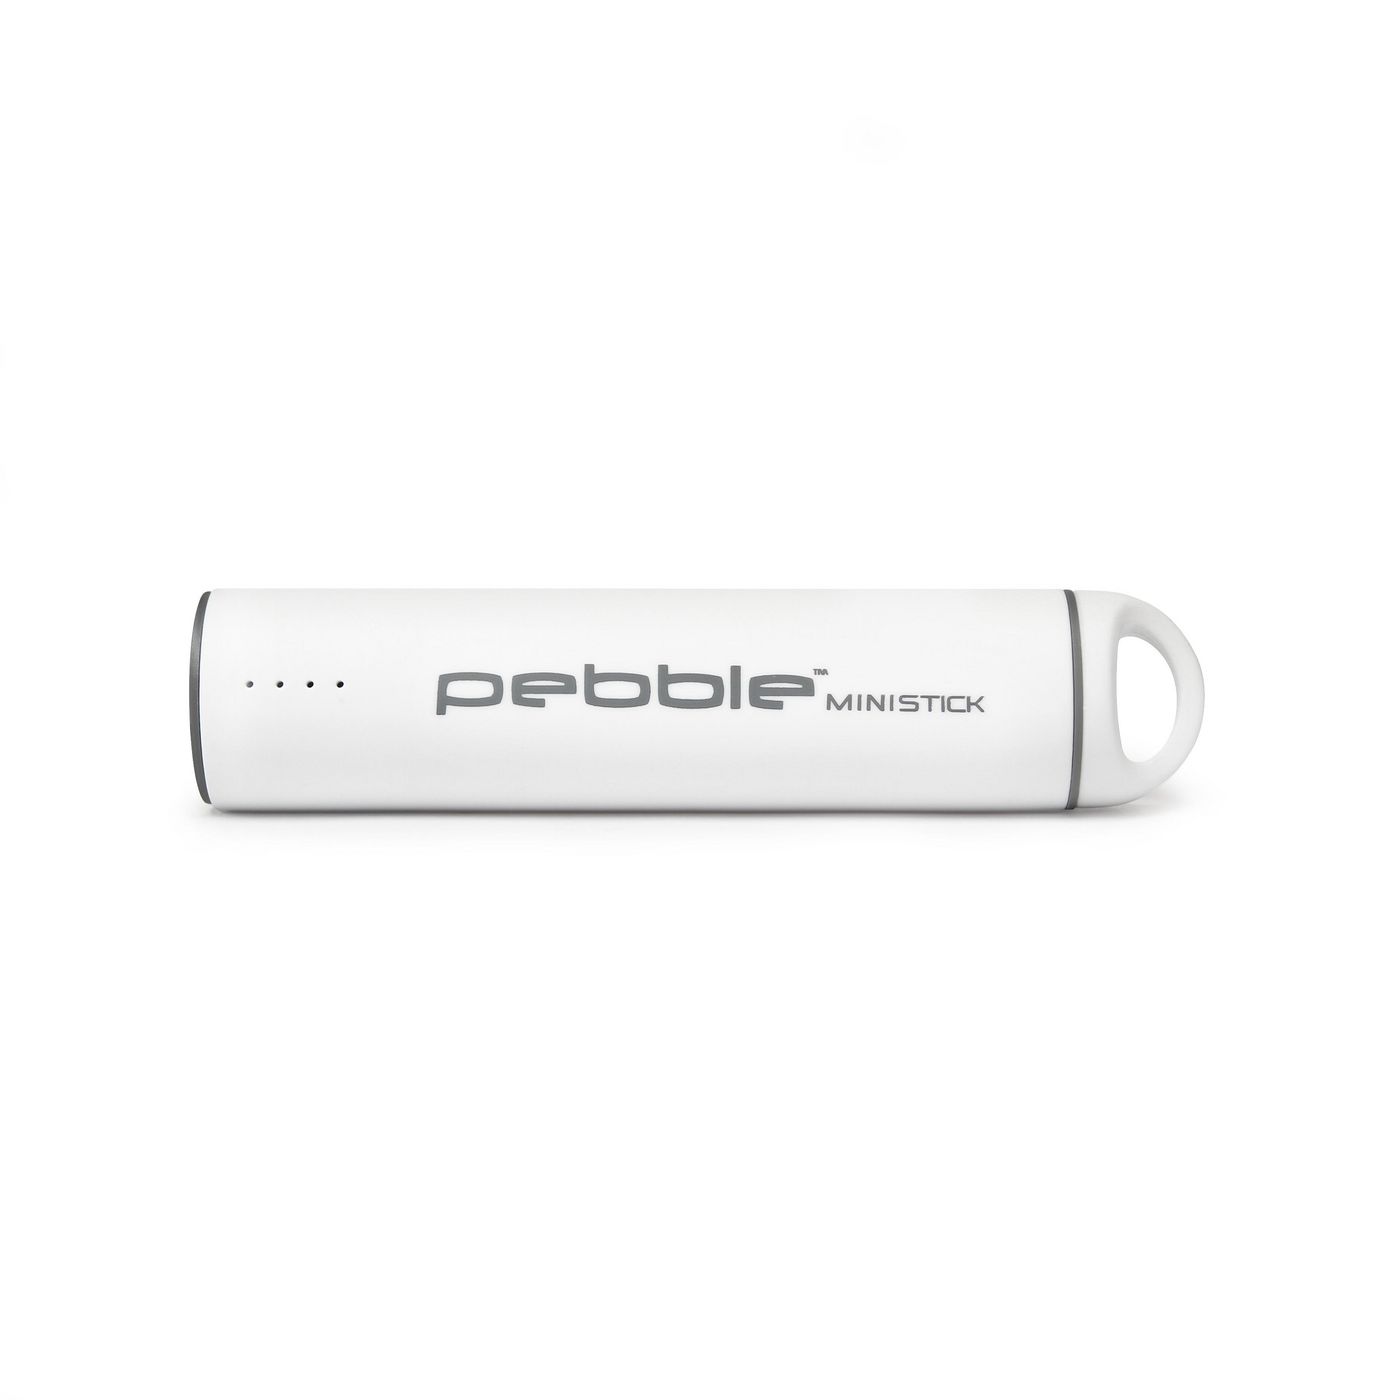 Veho Pebble Ministick 2200mAh Portable Rechargeable (VPP-102-WH-2200)